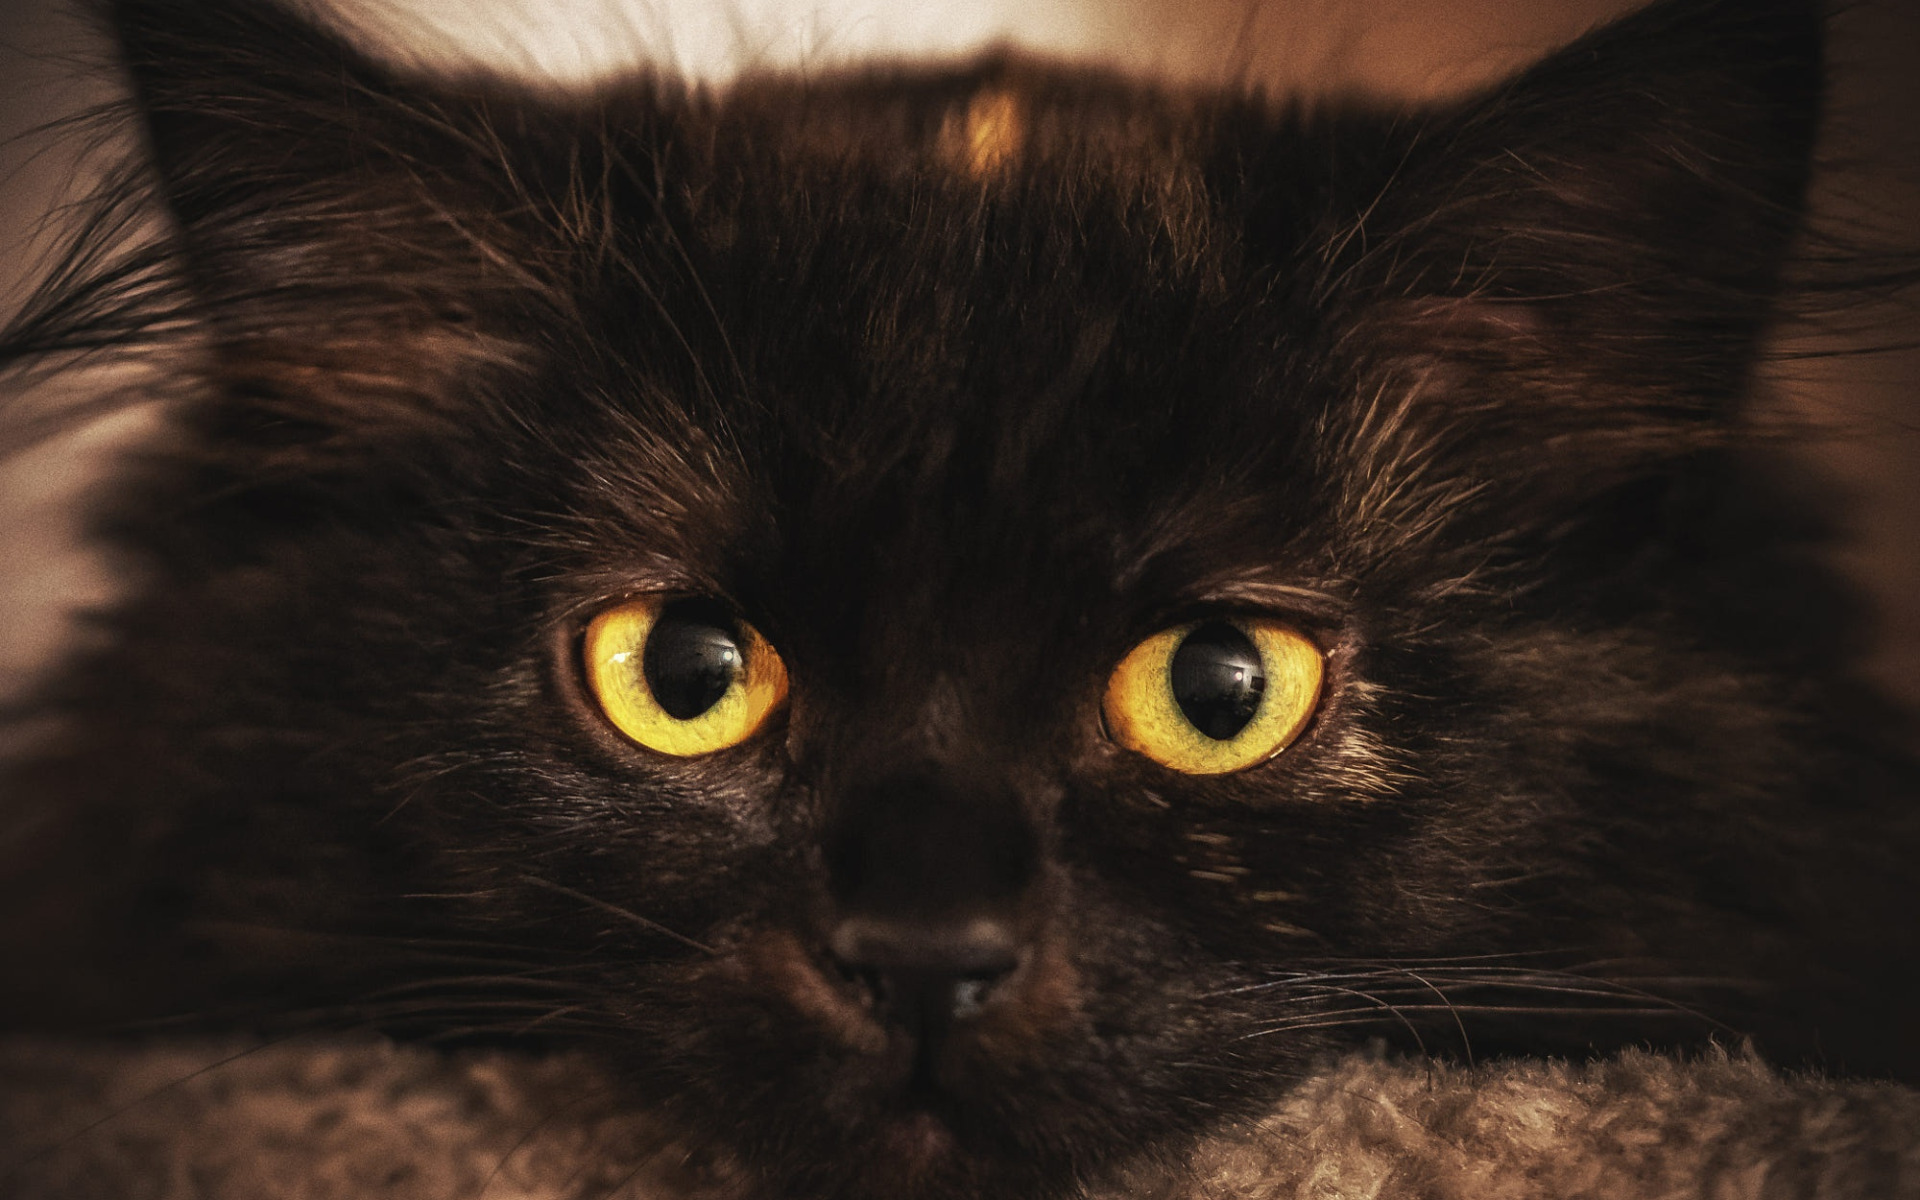 Порода черной кошки с желтыми глазами. Черный кот с желтыми глазами. Чёрный котёнок с жёлтыми глазами. Темнокорчинеаая кошка с желтыми глазами. Кот с черной челкой.